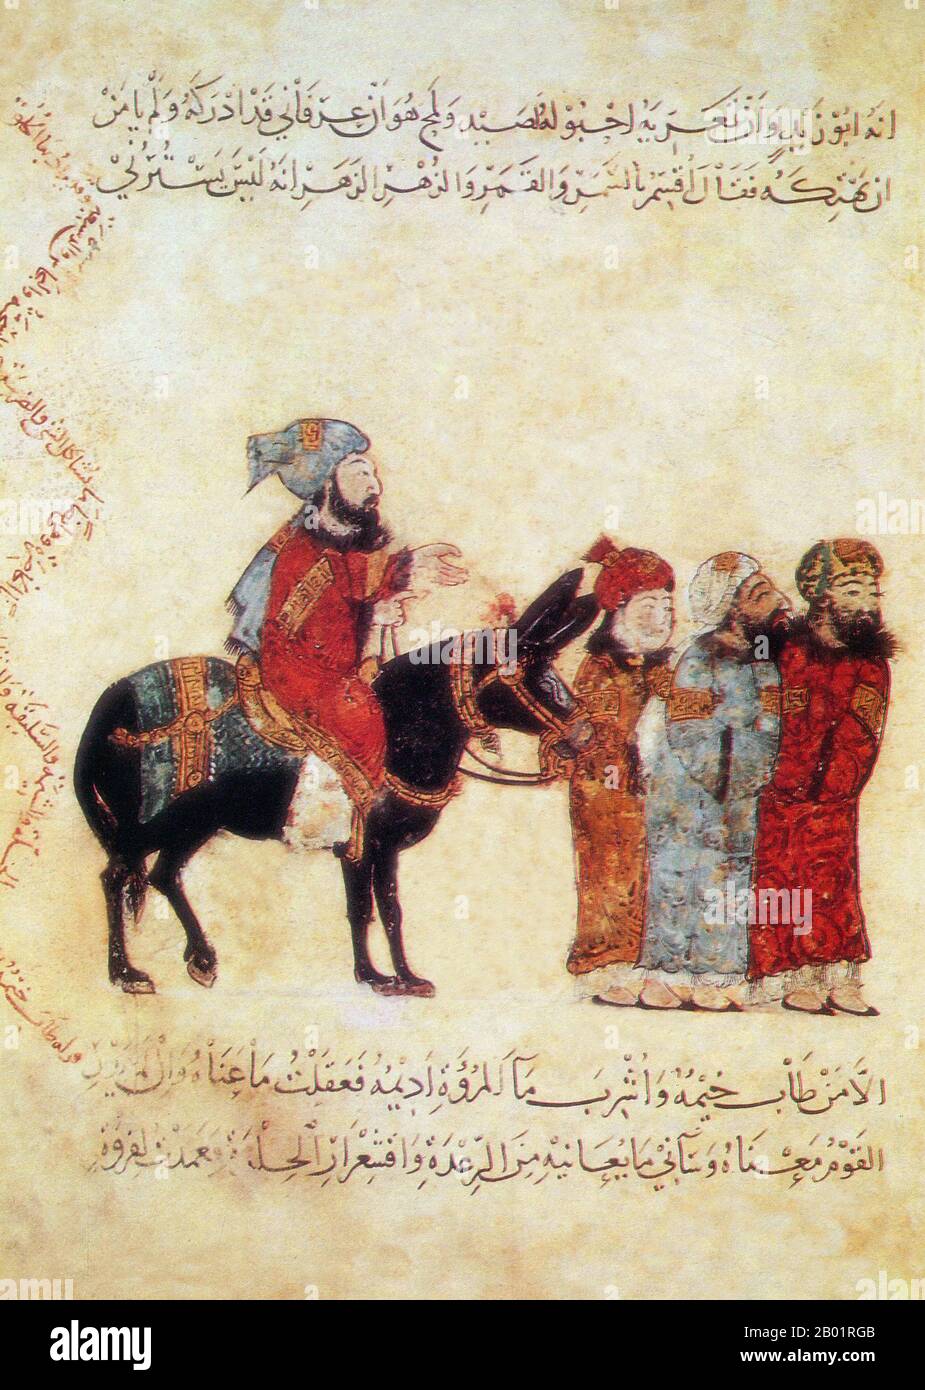 Iraq: Un uomo su un asino con tre viaggiatori. Pittura in miniatura di Yahya ibn Mahmud al-Wasiti, 1237 d.C. Yahyâ ibn Mahmûd al-Wâsitî è stato un artista arabo islamico del XIII secolo. Al-Wasiti è nato a Wasit, nel sud dell'Iraq. Era noto per le sue illustrazioni del Maqam di al-Hariri. I Maqāma (letteralmente "assemblee") sono un genere letterario arabo (originariamente) di prosa rimata con intervalli di poesia in cui la stravaganza retorica è evidente. Si dice che l'autore del X secolo Badī' al-Zaman al-Hamadhāni abbia inventato la forma, che fu estesa da al-Hariri di Bassora nel secolo successivo. Foto Stock